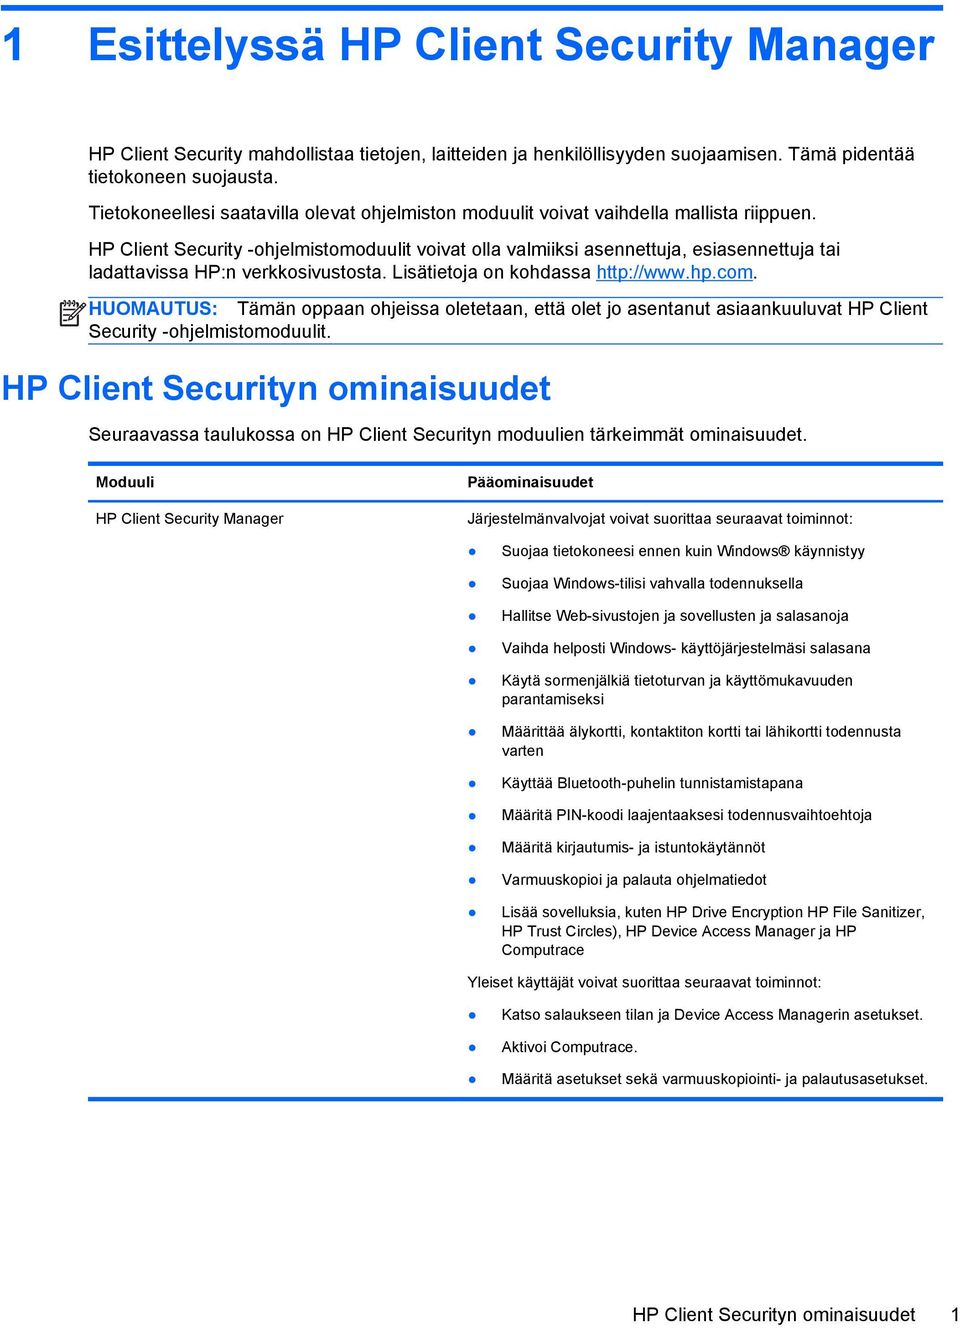 HP Client Security -ohjelmistomoduulit voivat olla valmiiksi asennettuja, esiasennettuja tai ladattavissa HP:n verkkosivustosta. Lisätietoja on kohdassa http://www.hp.com.